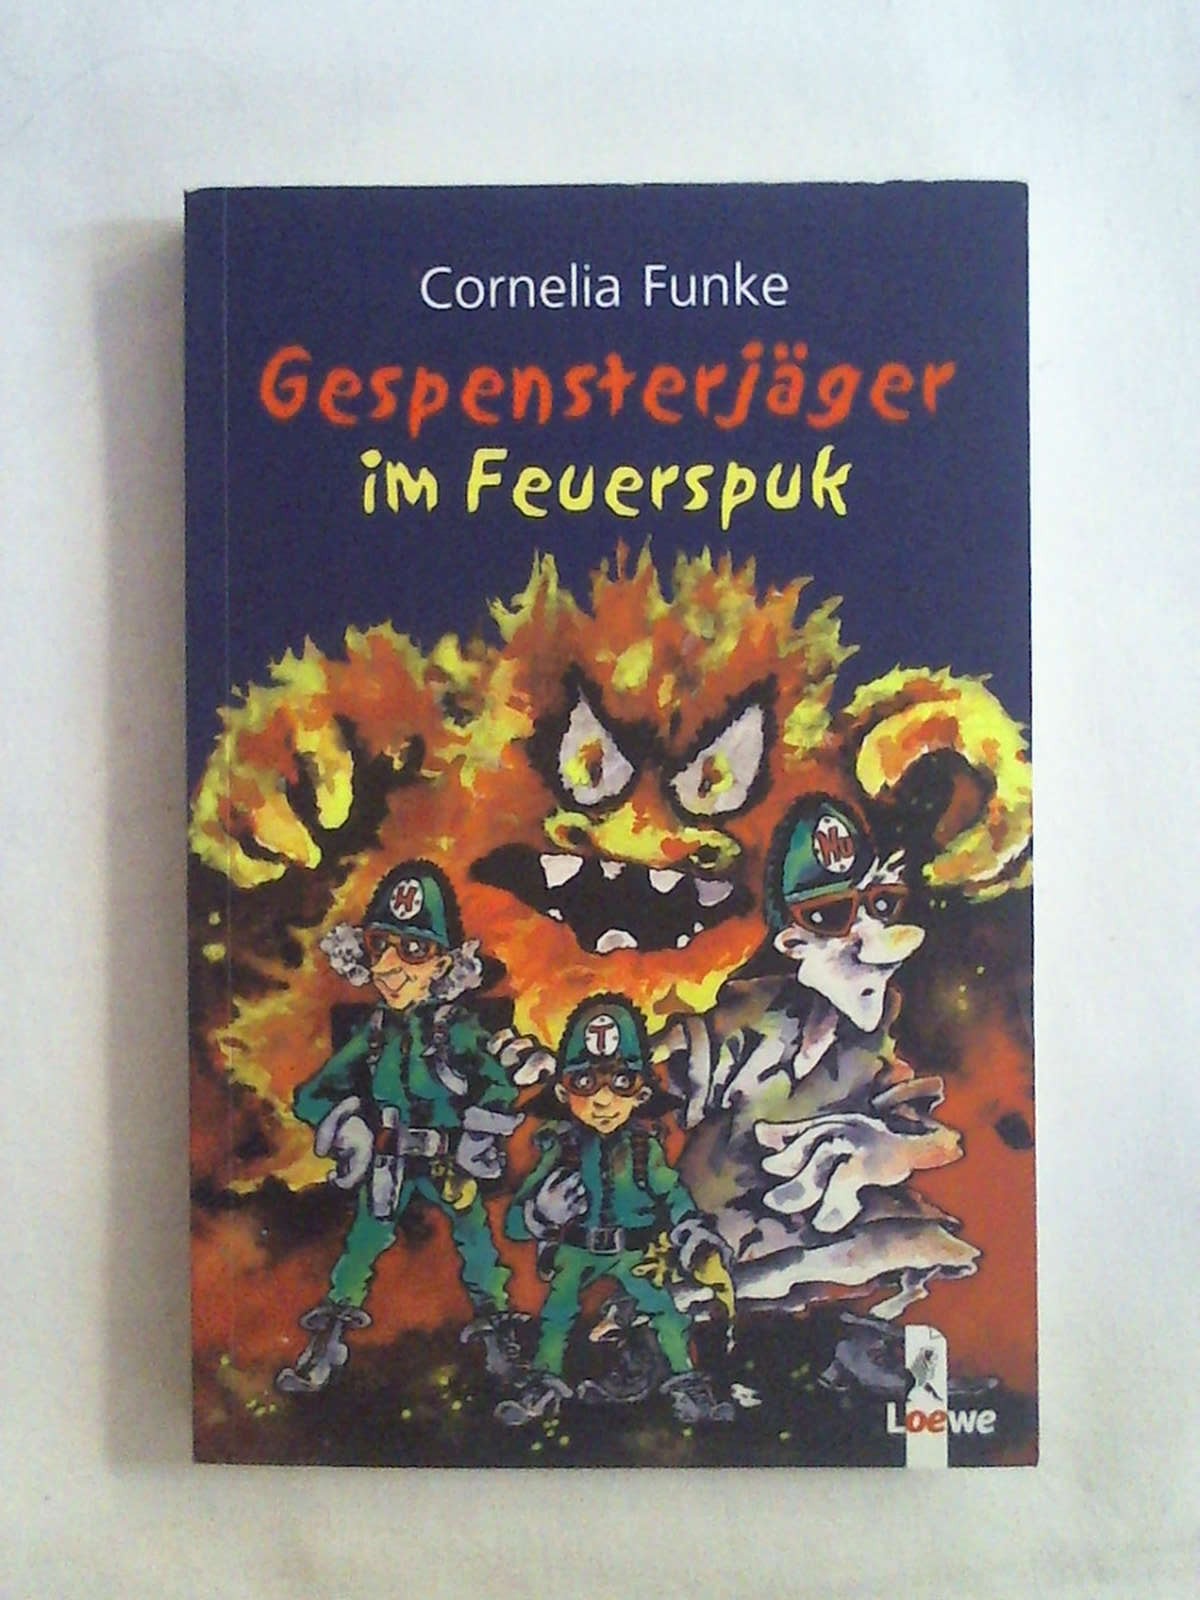 Gespensterjäger im Feuerspuk: Gespensterjäger-Aktion - Cornelia Funke